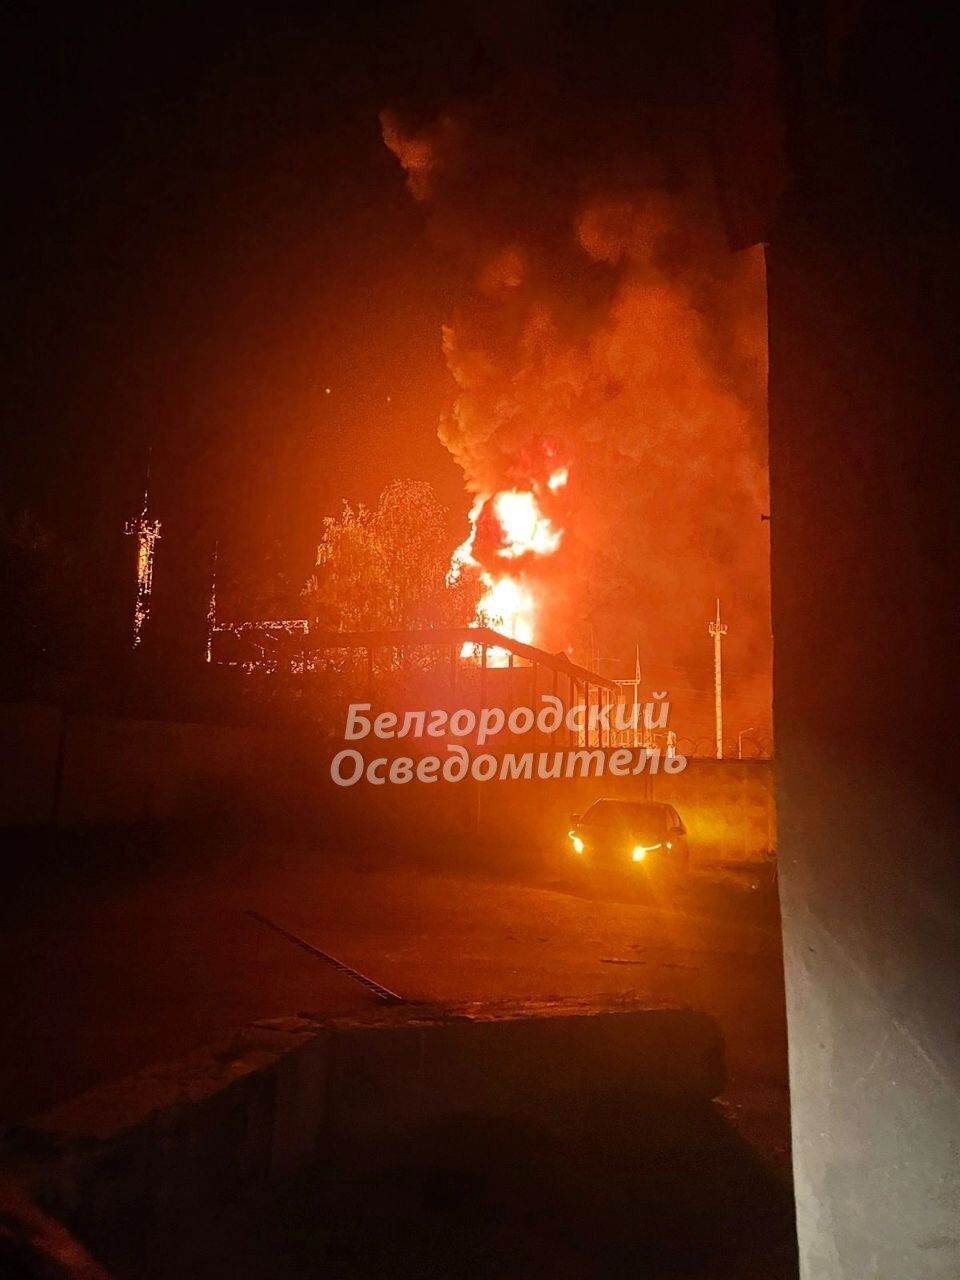 Оккупанты обстреляли Харьков, однако ракеты приземлились в Белгороде: в городе исчез свет и начался пожар. Фото и видео